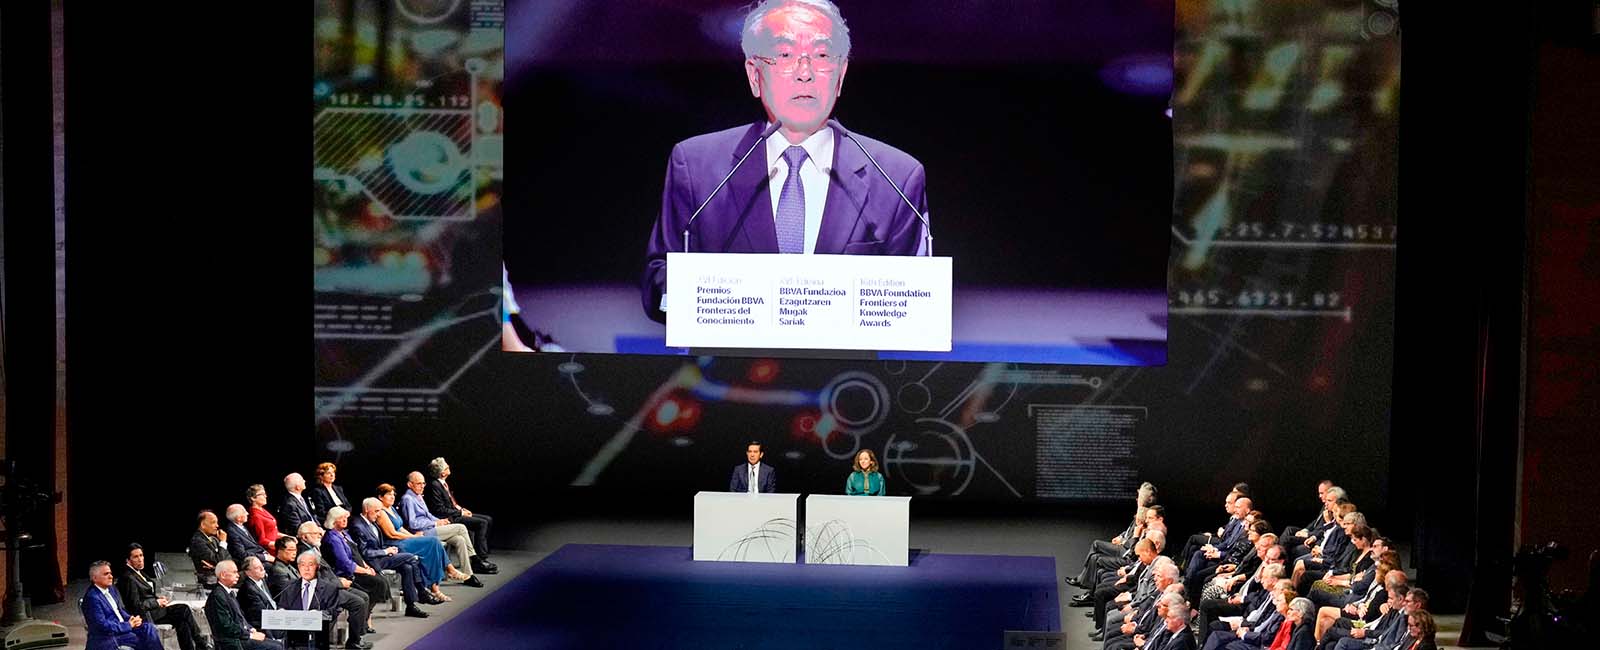 Takeo Kanade pronunciando su discurso durante la ceremonia de entrega de los XVI Premios Fronteras del Conocimiento de la Fundación BBVA